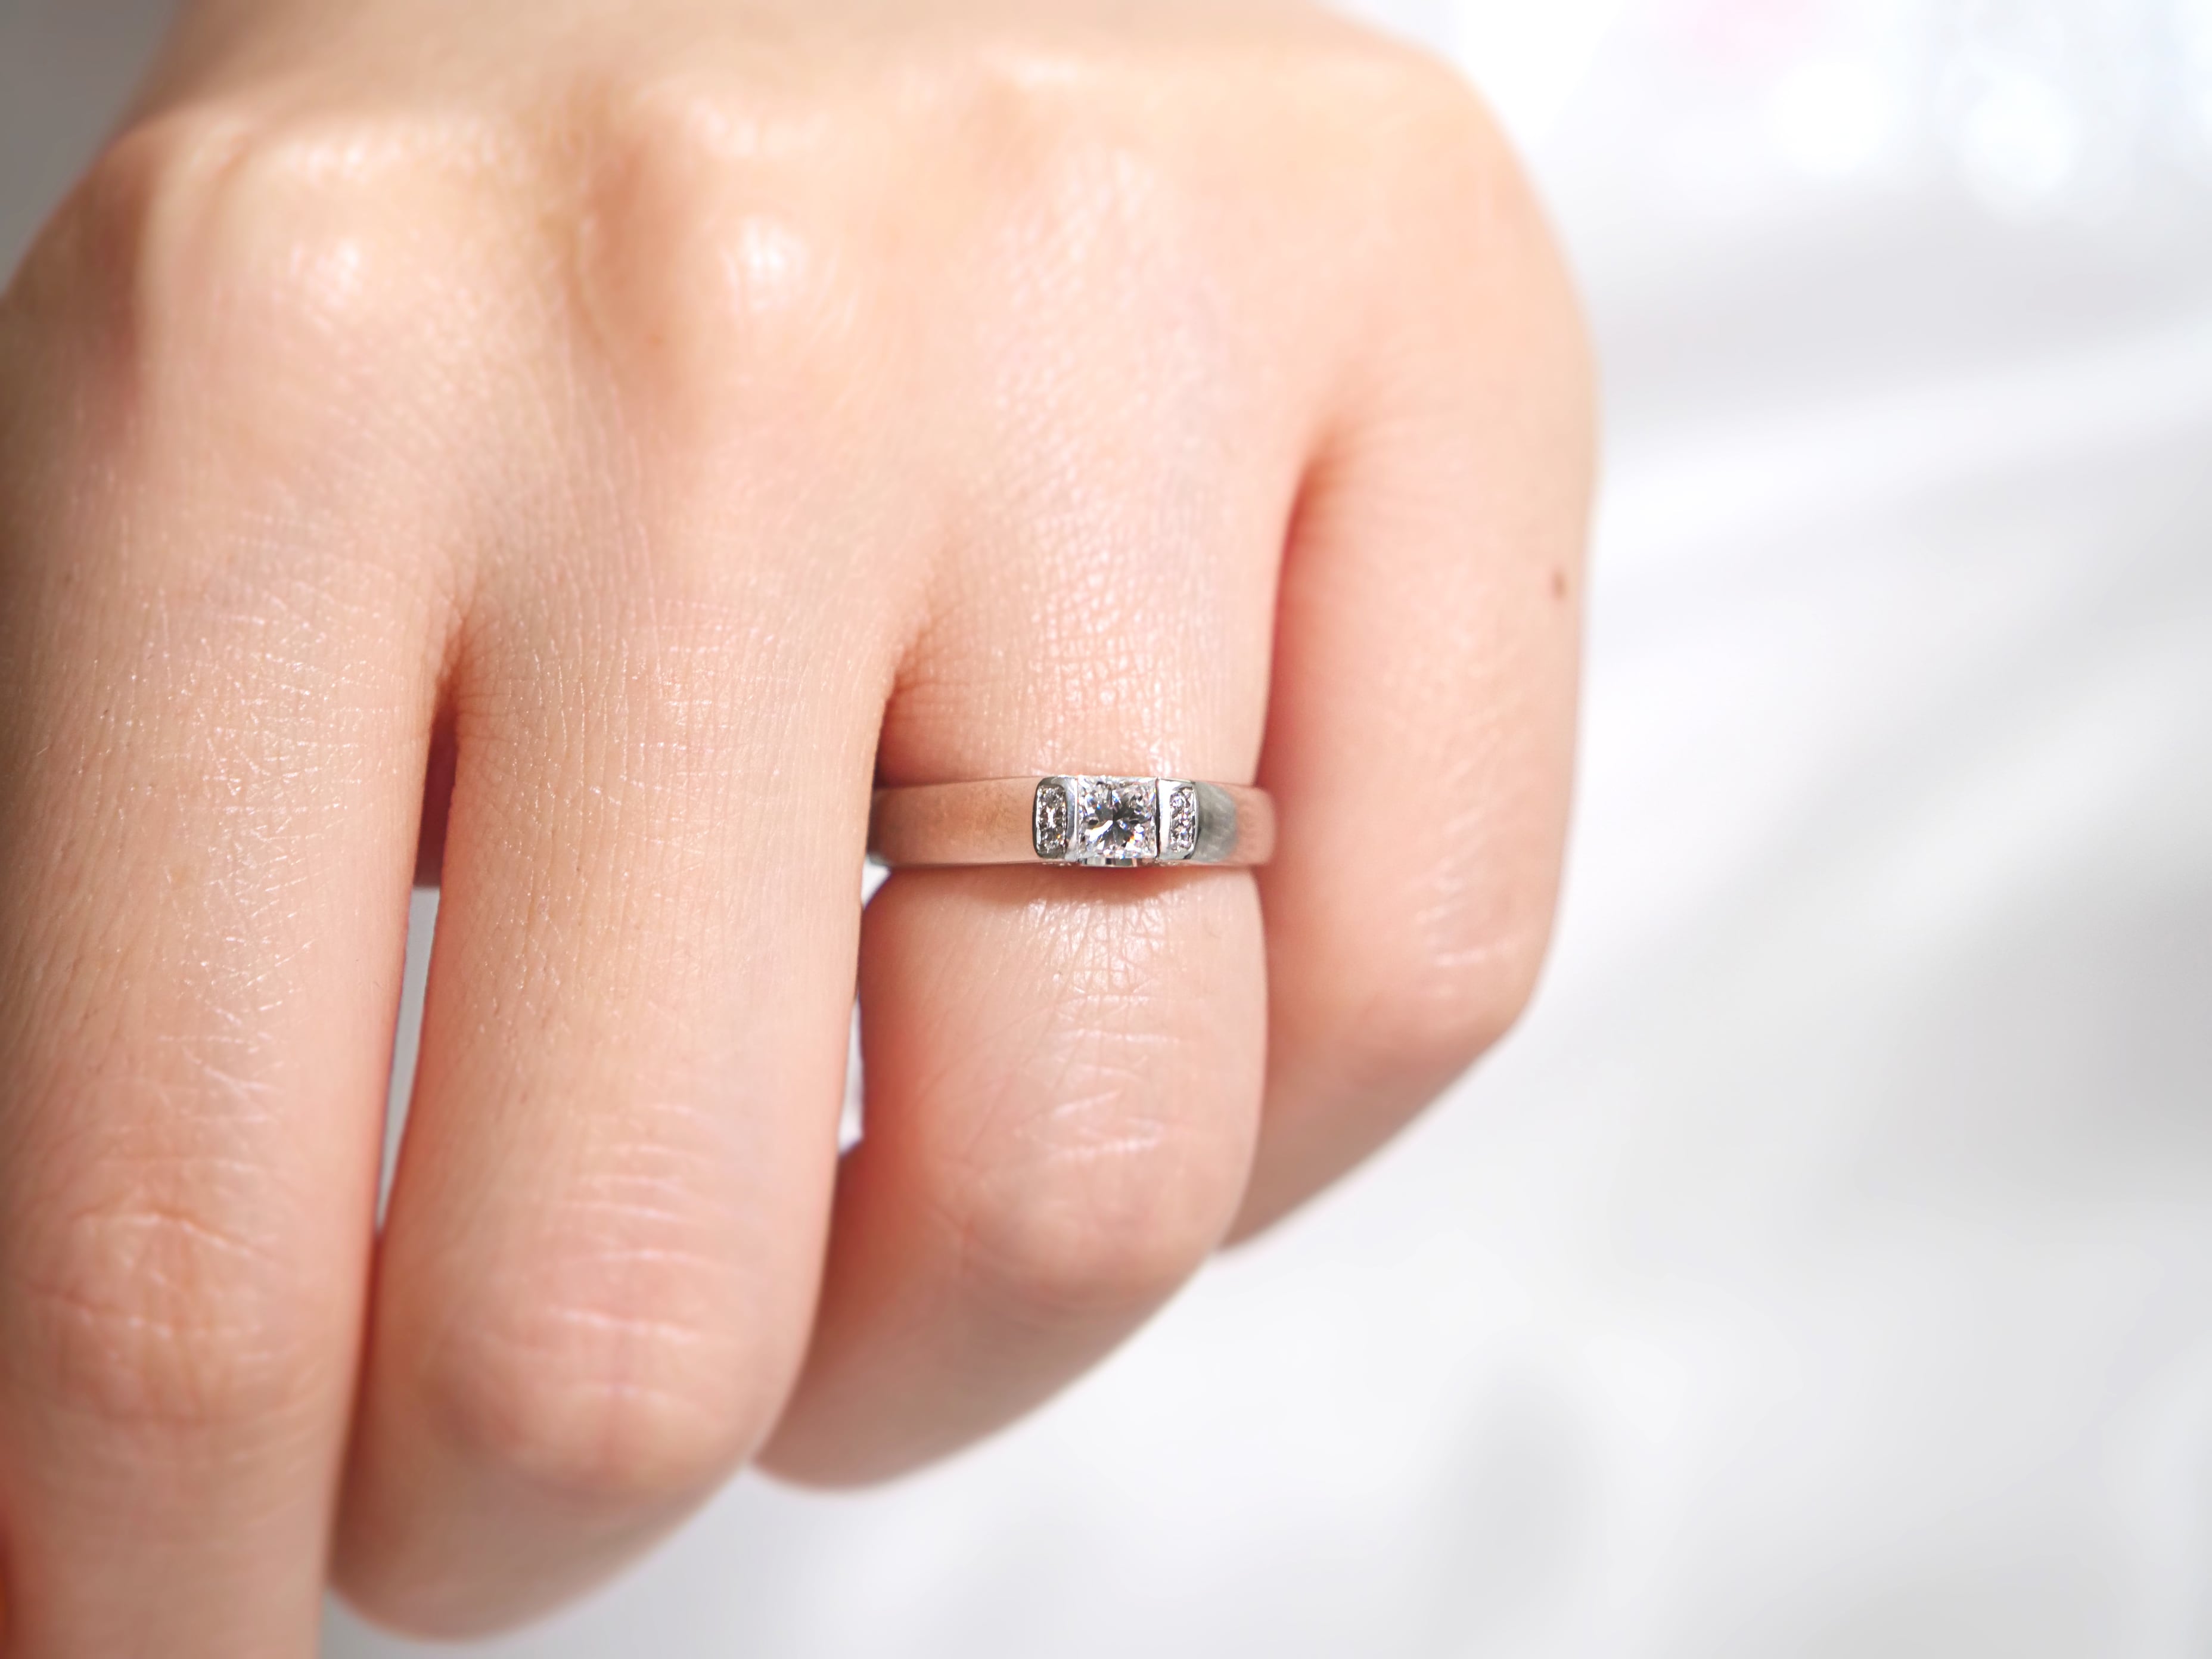 婚約指輪 エンゲージリング プラチナ指輪】Pt900 天然ダイヤモンド